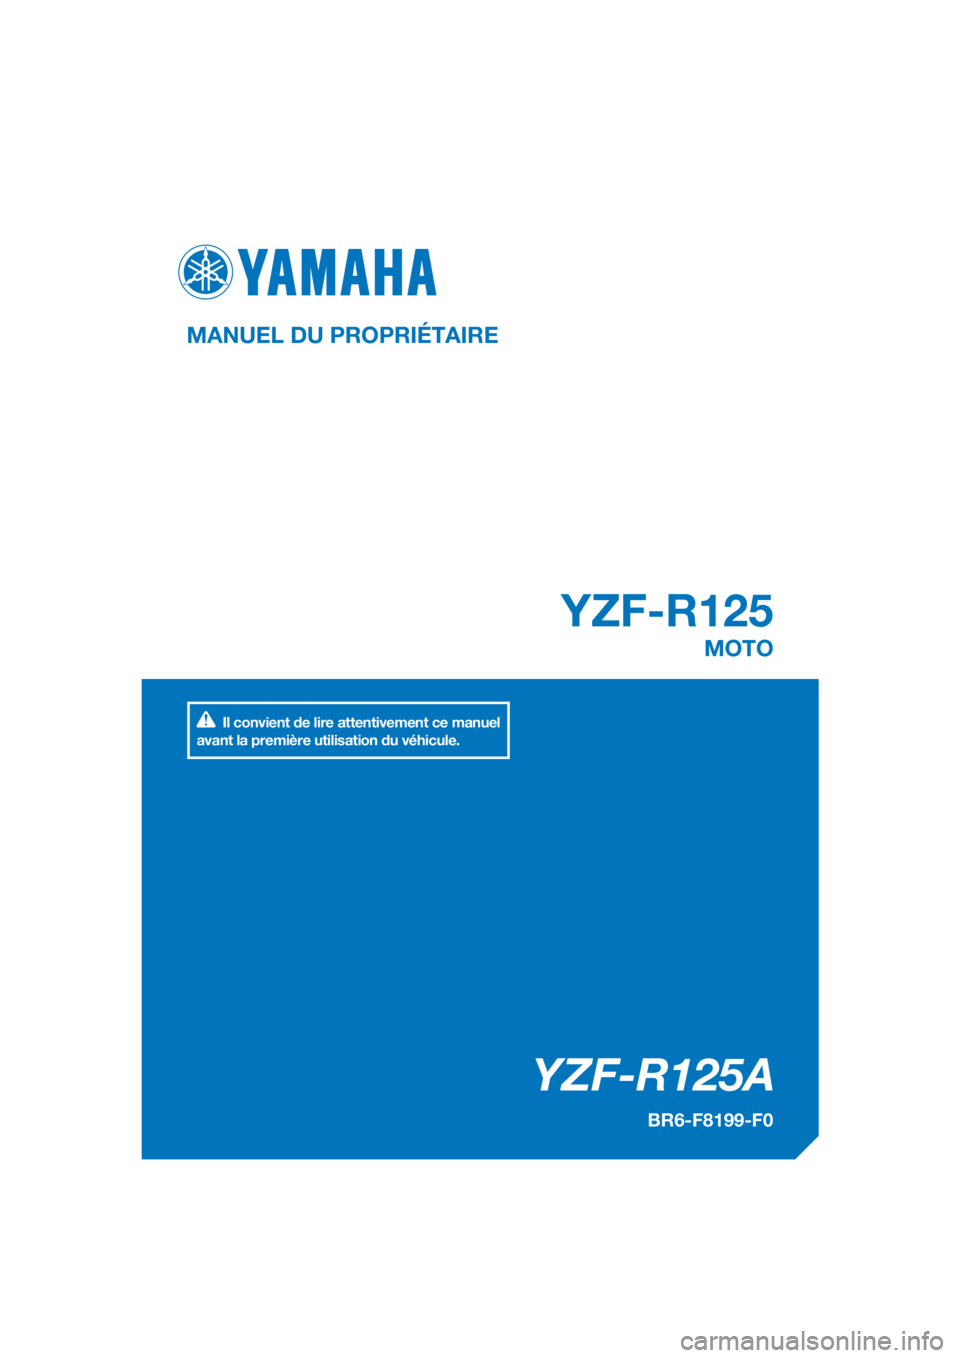 YAMAHA YZF-R125 2017  Notices Demploi (in French) PANTONE285C
YZF-R125A
YZF-R125
MANUEL DU PROPRIÉTAIRE
BR6-F8199-F0
MOTO
Il convient de lire attentivement ce manuel 
avant la première utilisation du véhicule.
[French  (F)] 